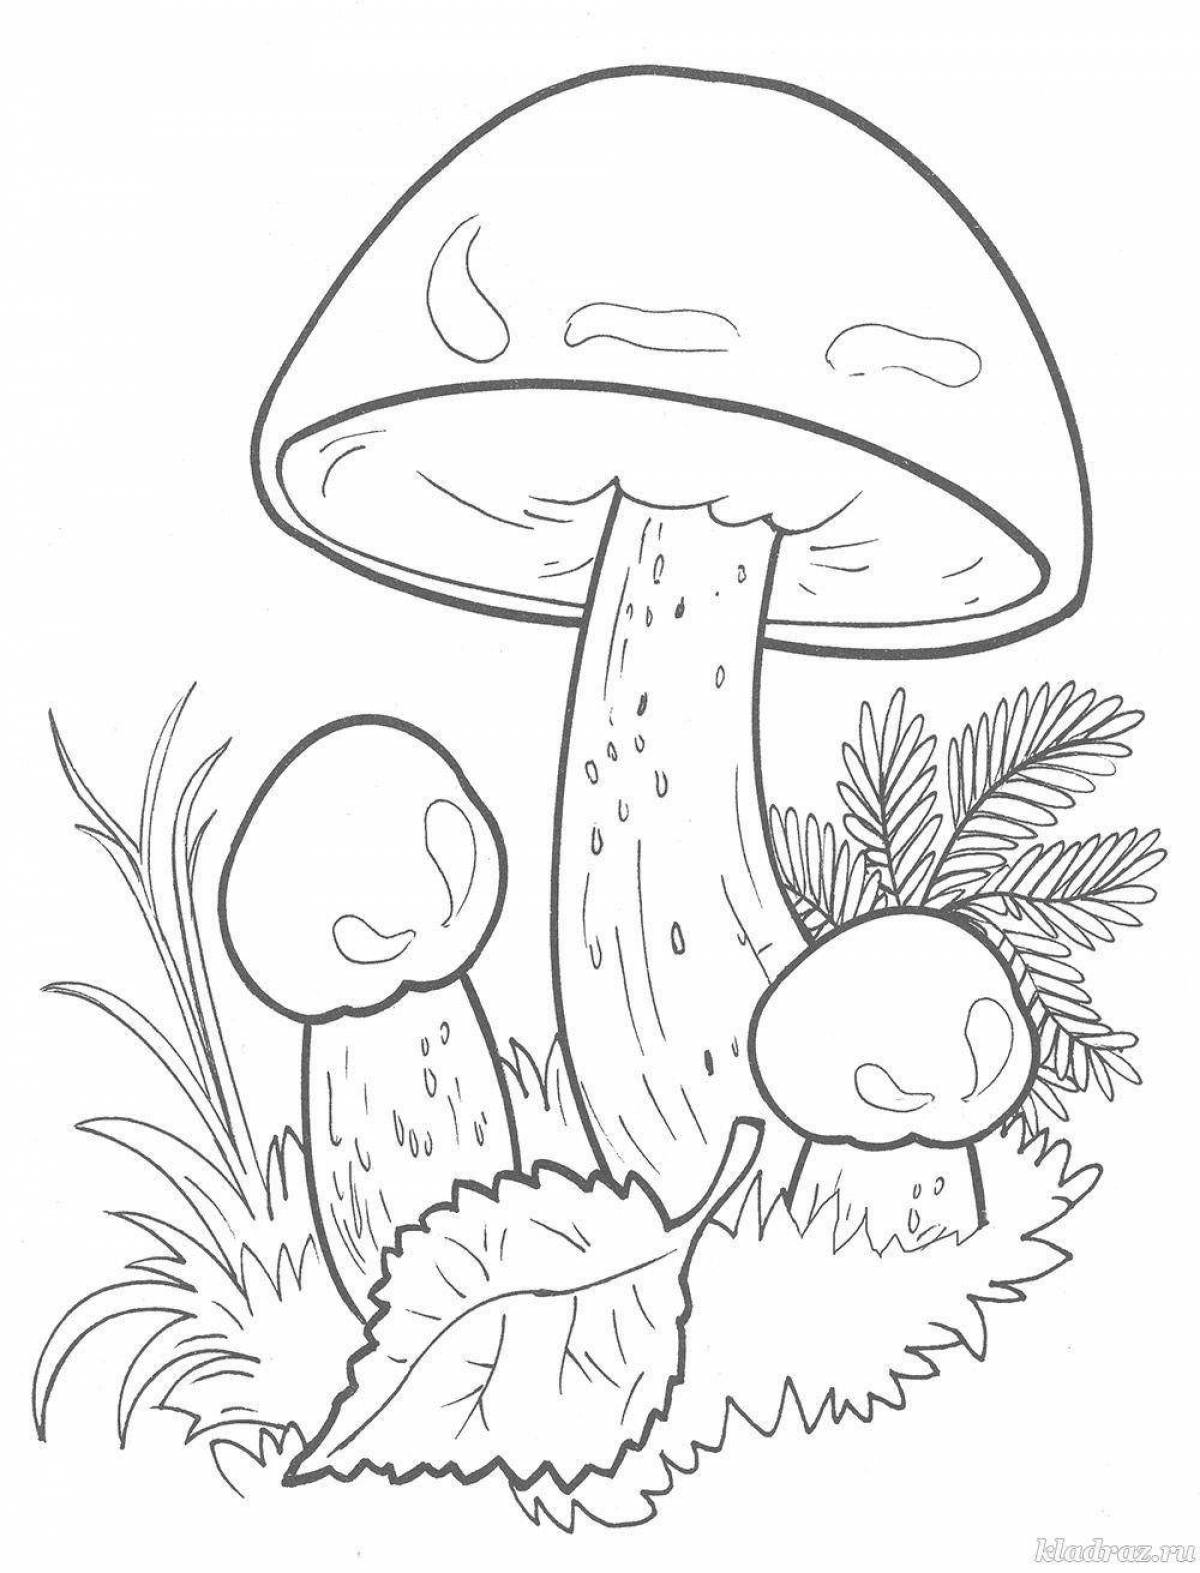 Удивительная раскраска грибов для детей 3-4 лет